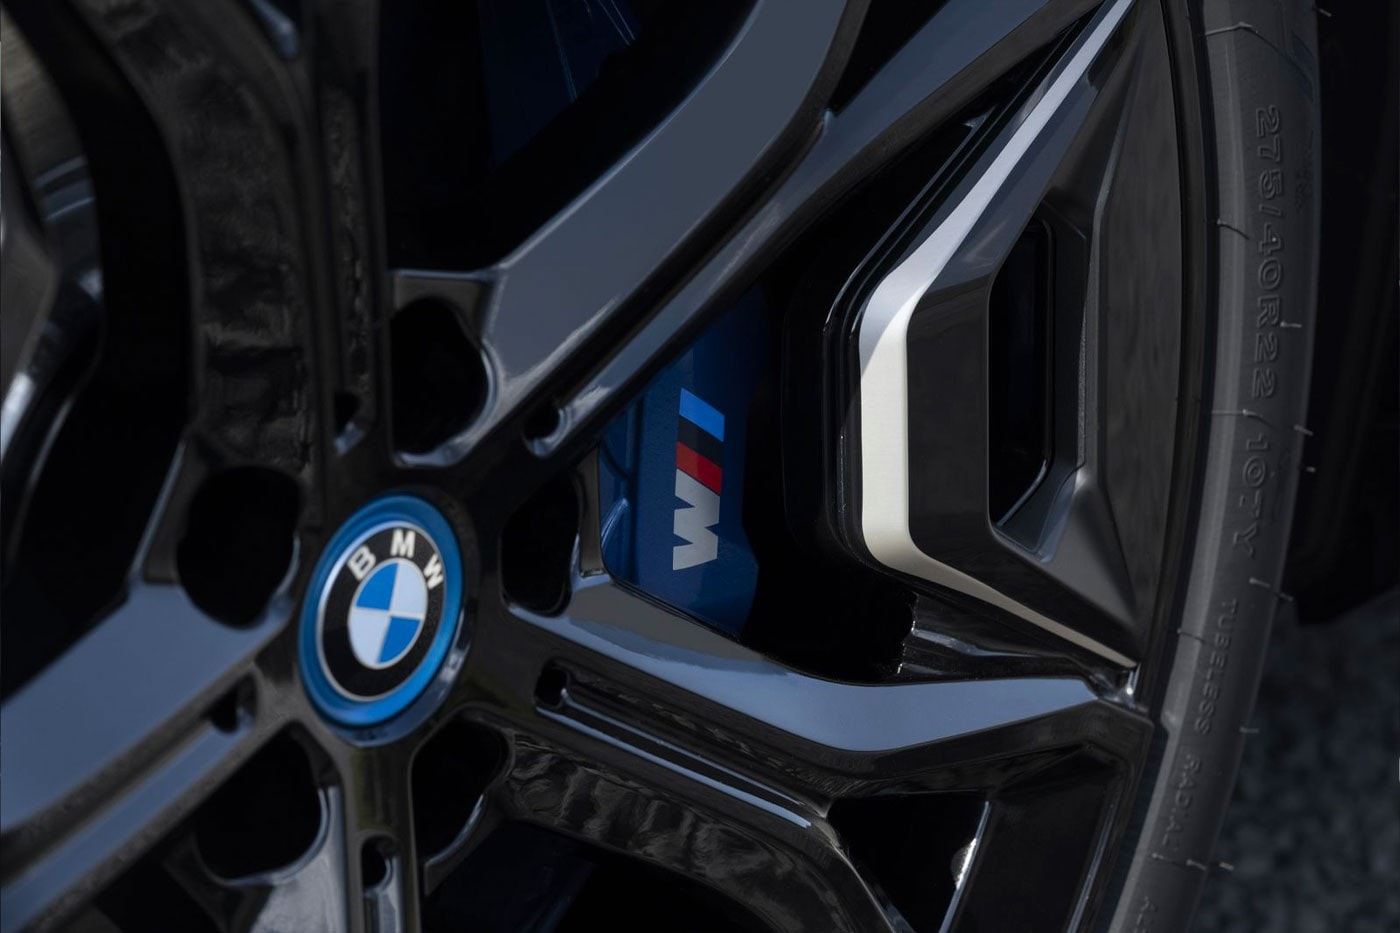 BMW 揭示全新電能 SUV 車型 iX M60